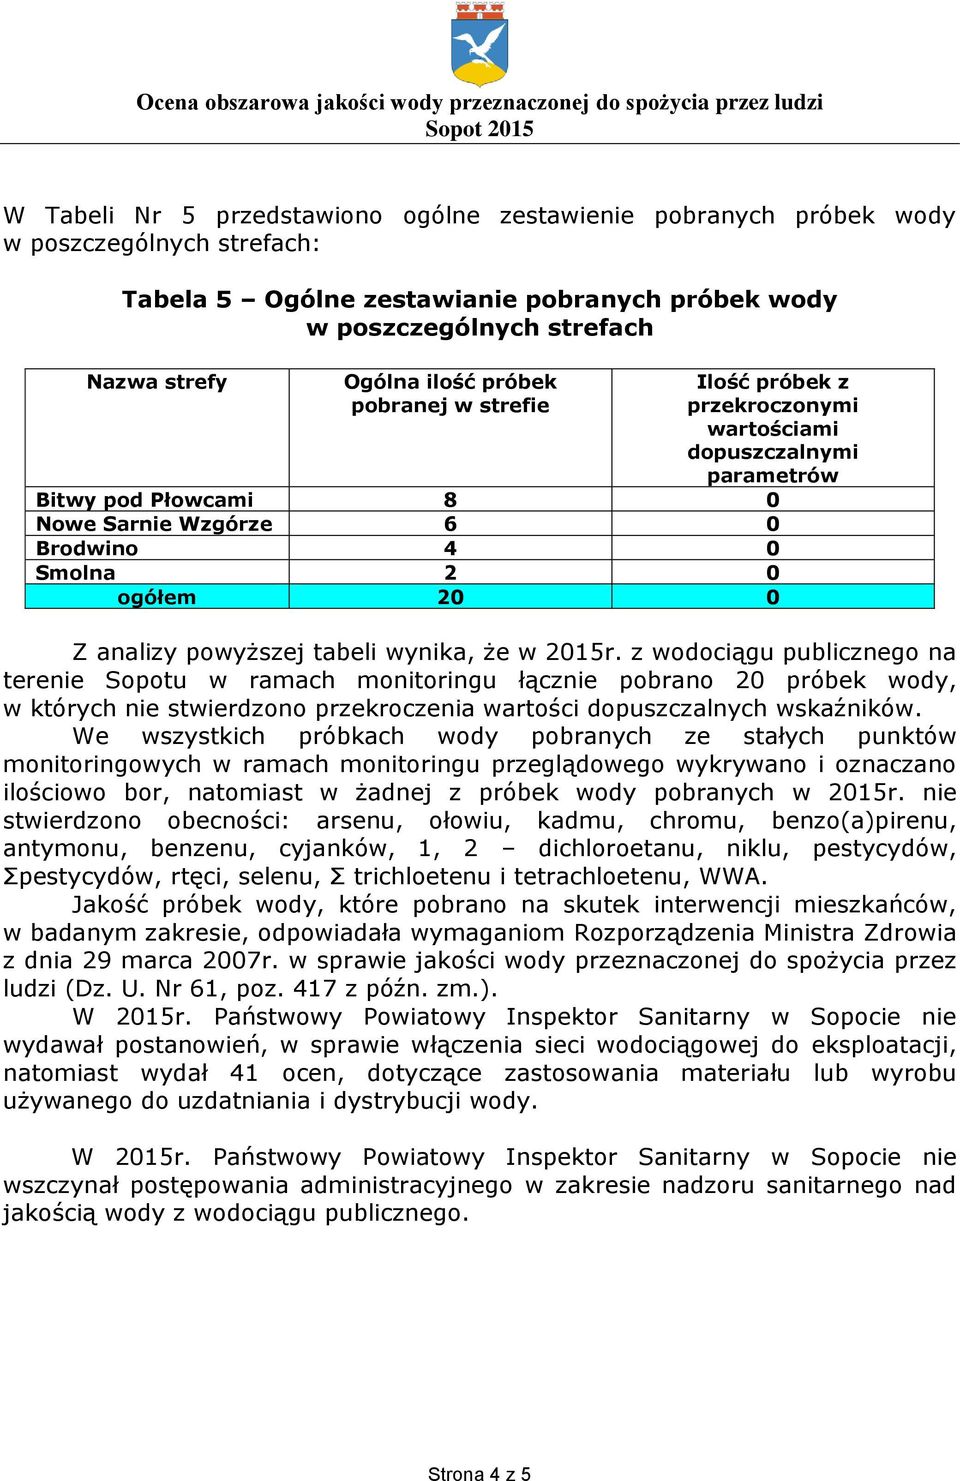 tabeli wynika, że w 2015r. z wodociągu publicznego na terenie Sopotu w ramach monitoringu łącznie pobrano 20 próbek wody, w których nie stwierdzono przekroczenia wartości dopuszczalnych wskaźników.